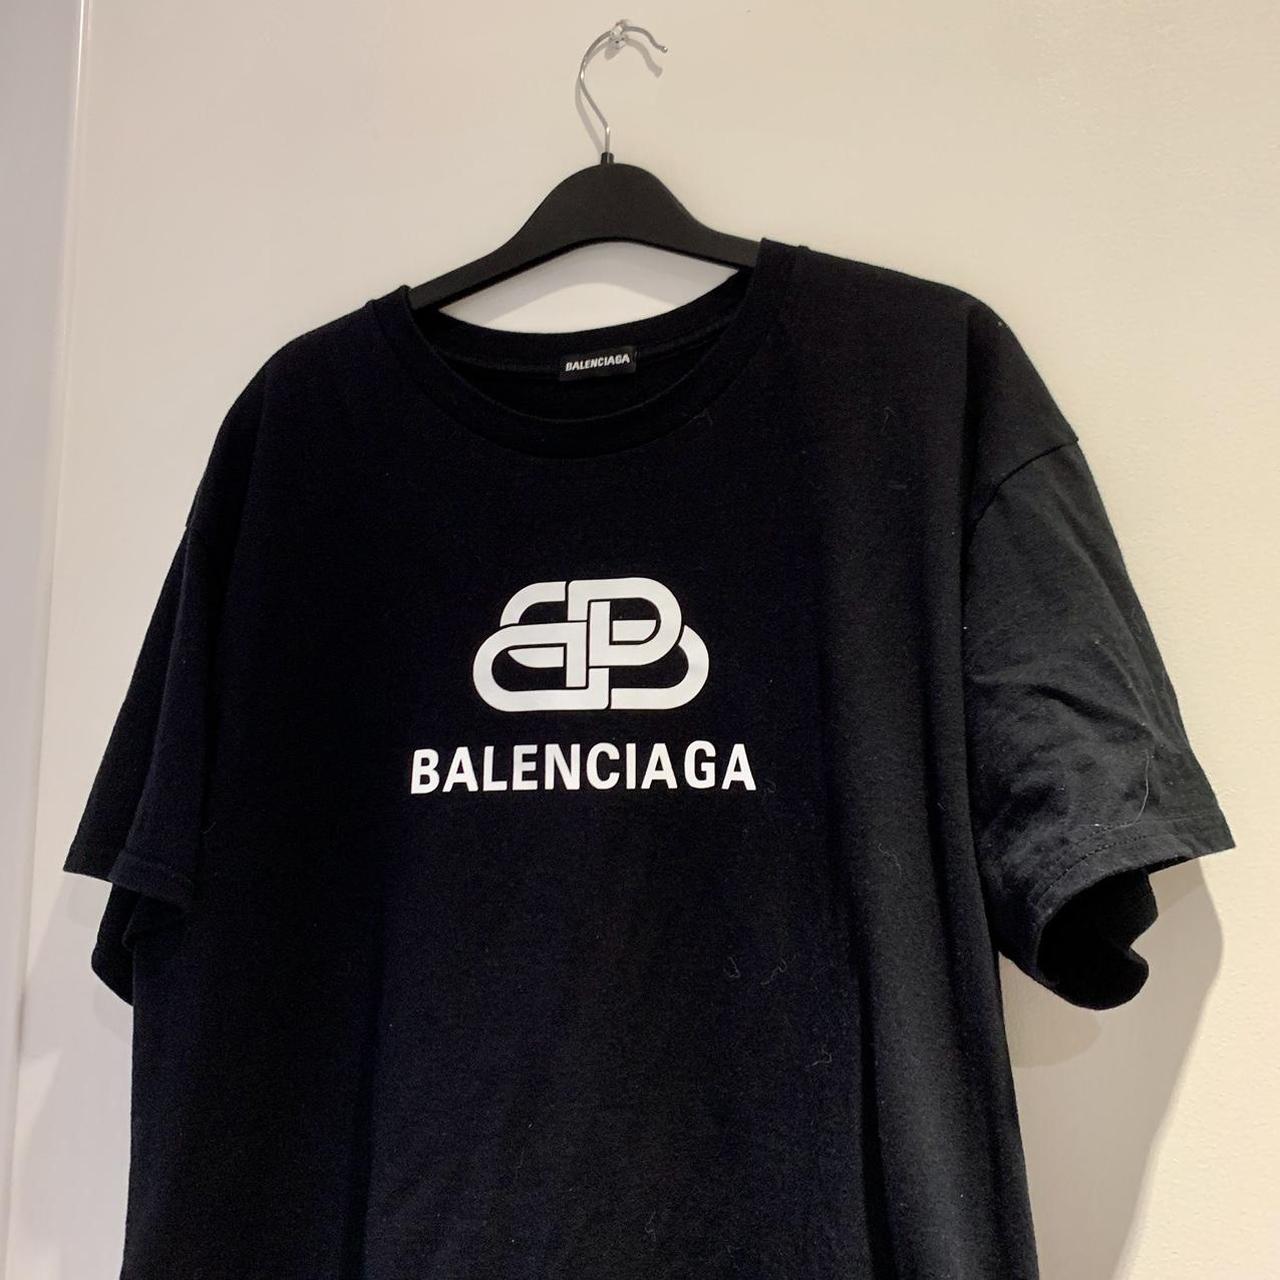 Balenciaga Shirt. Fits baggy/oversized. #Opium... - Depop